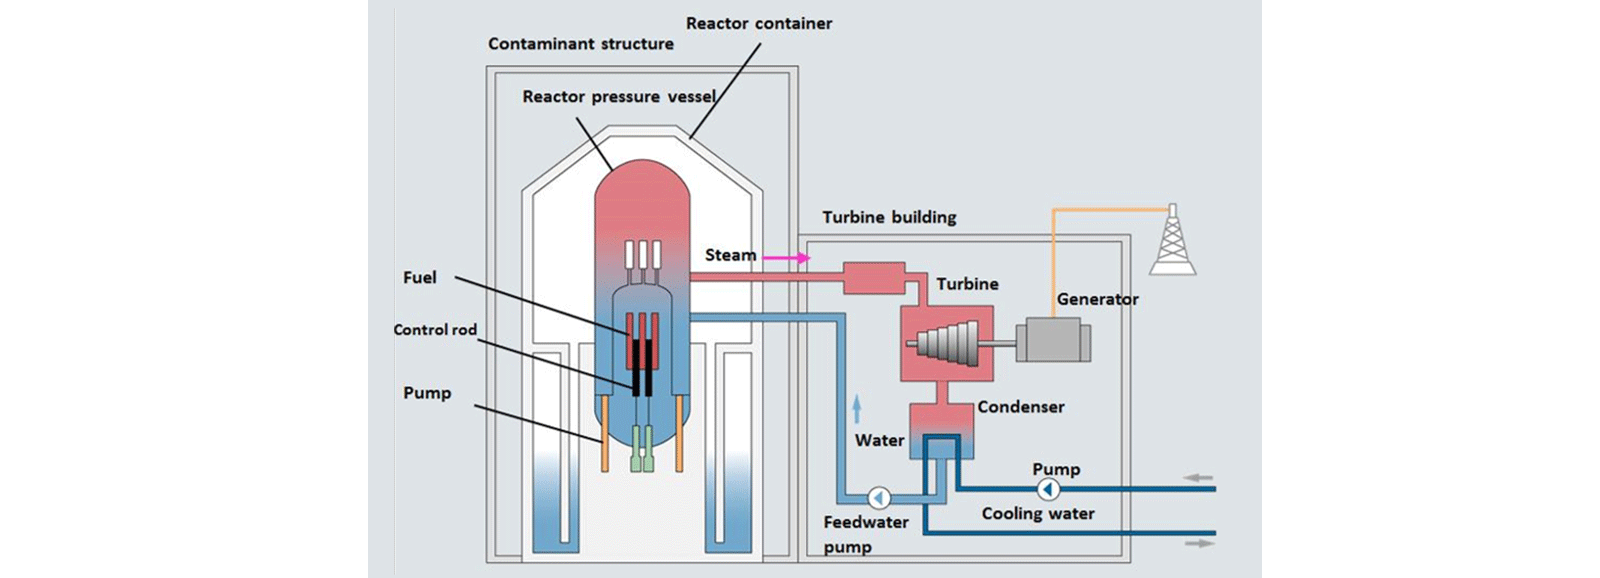 Kjernekraftverk: kokendevannsreaktor (BWR)